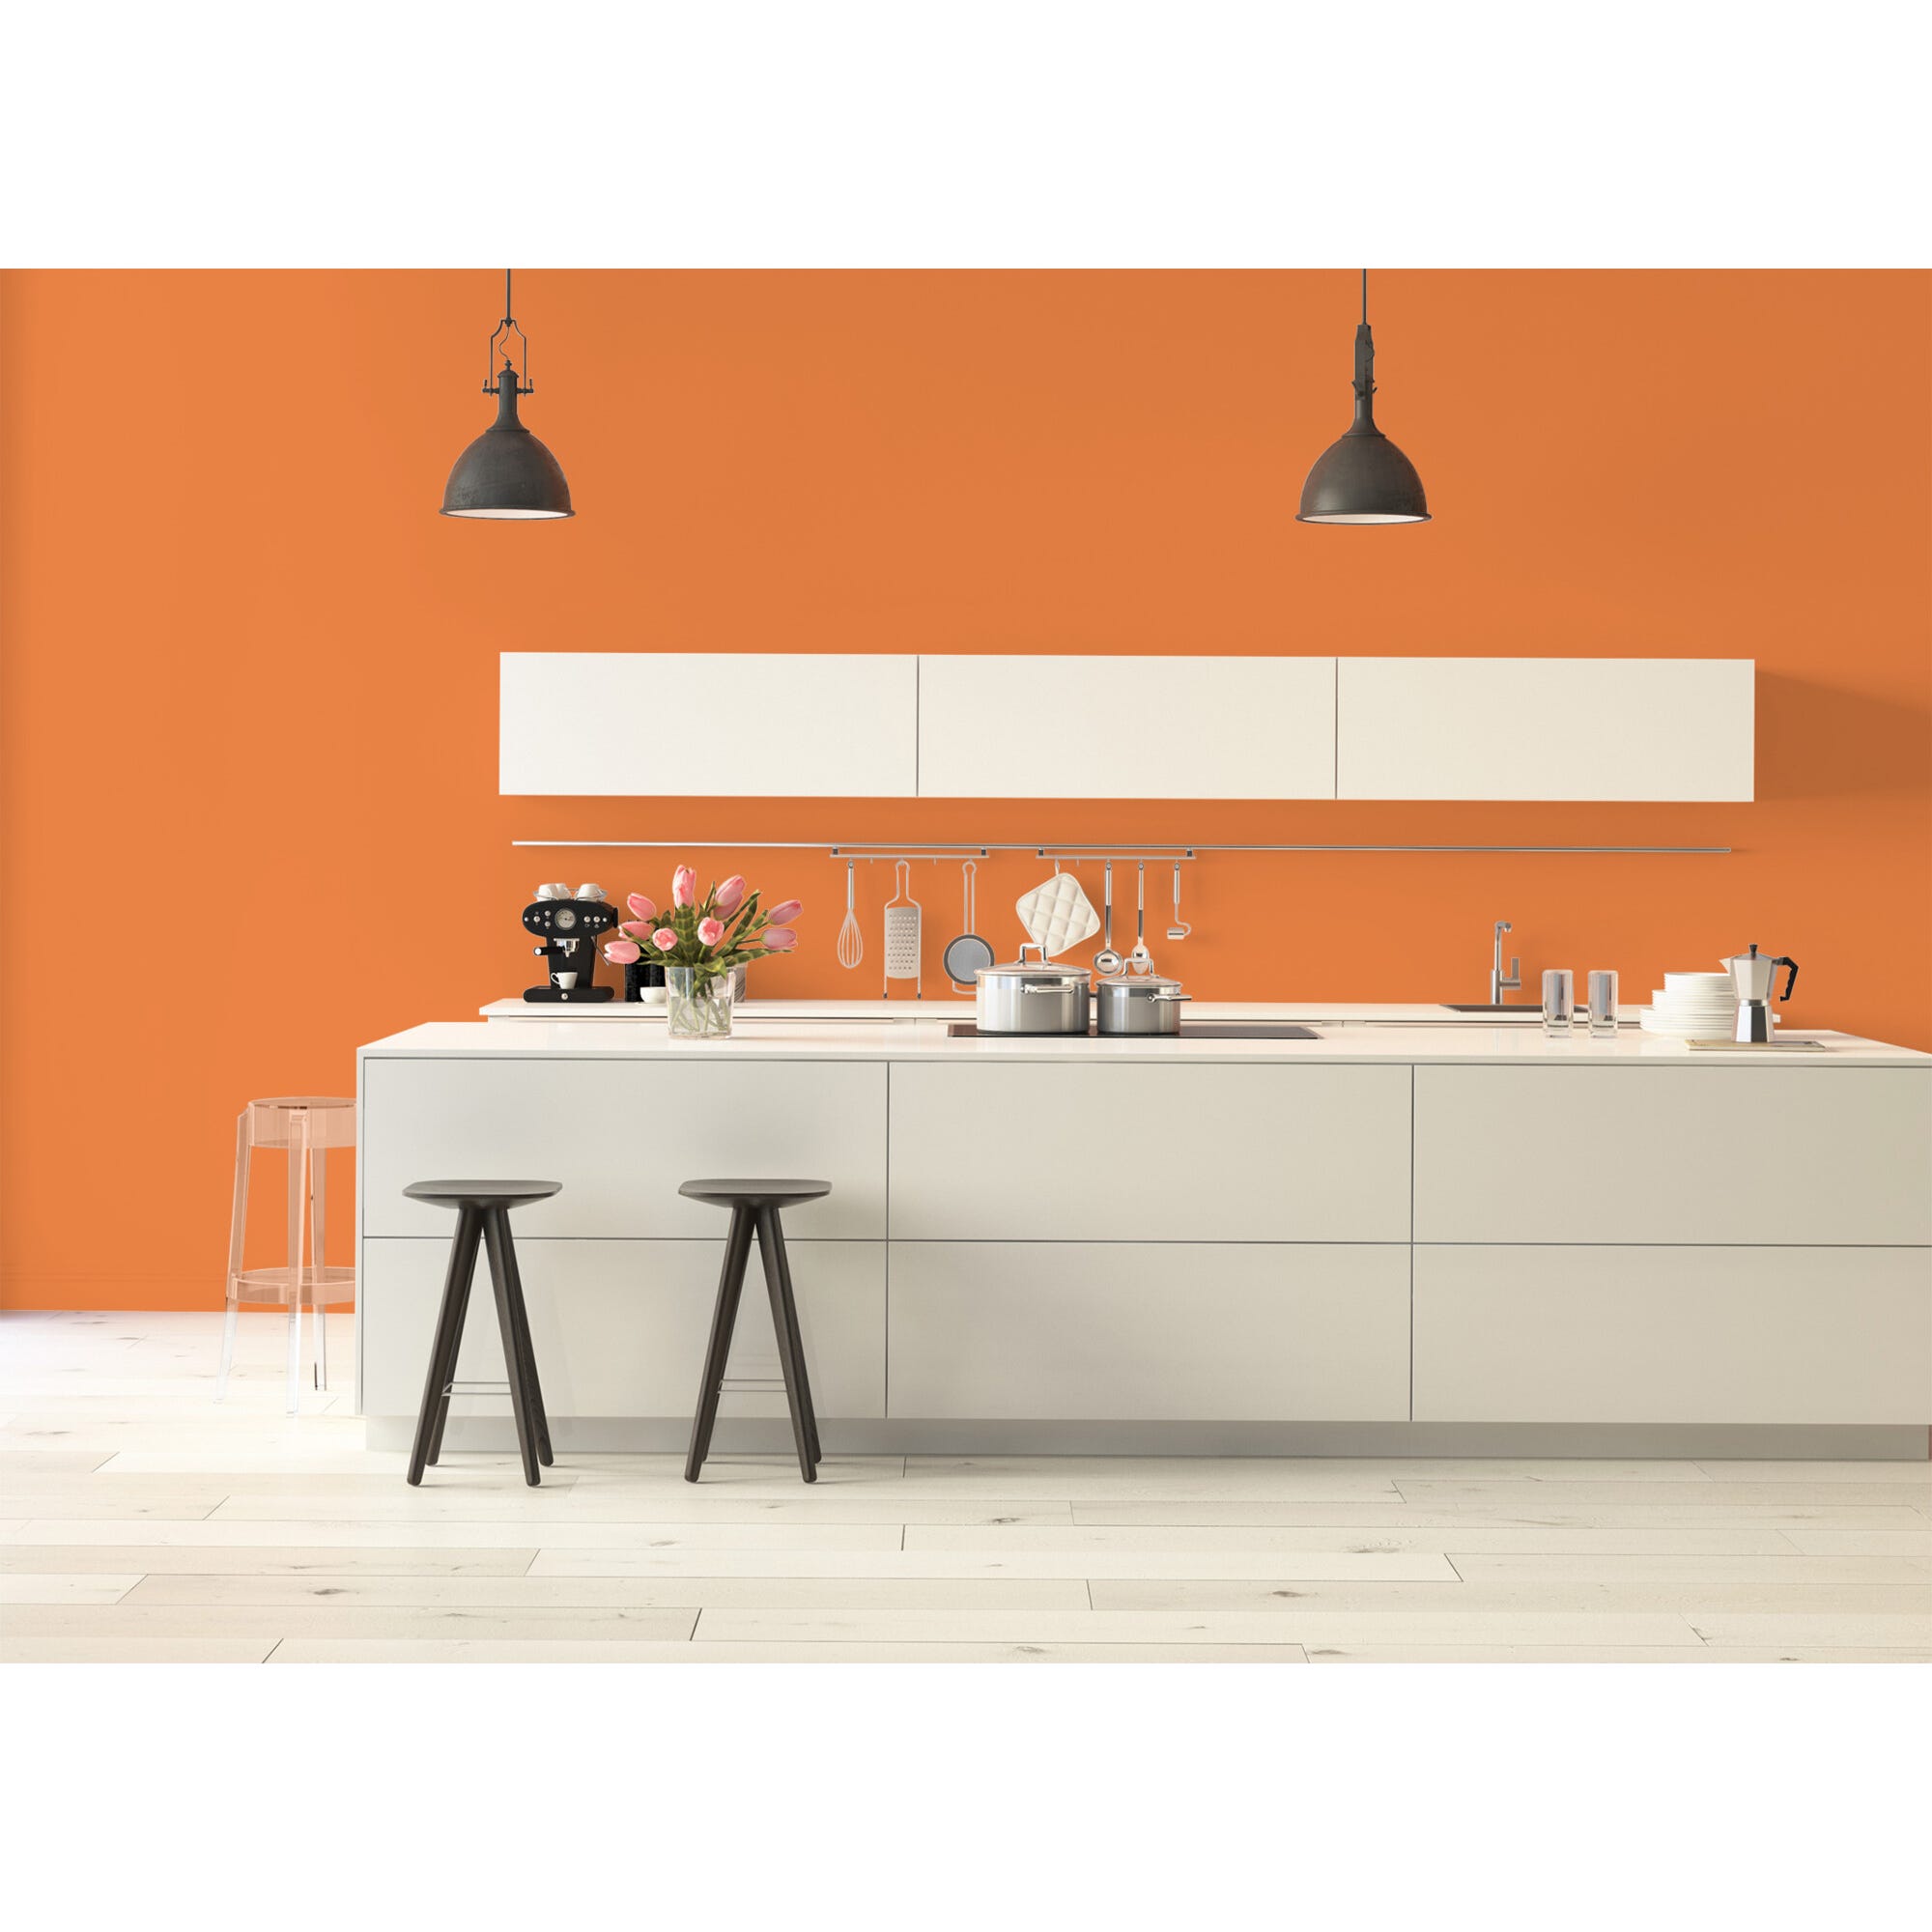 Peinture intérieure satin orange valencia teintée en machine 10L HPO - MOSAIK 5